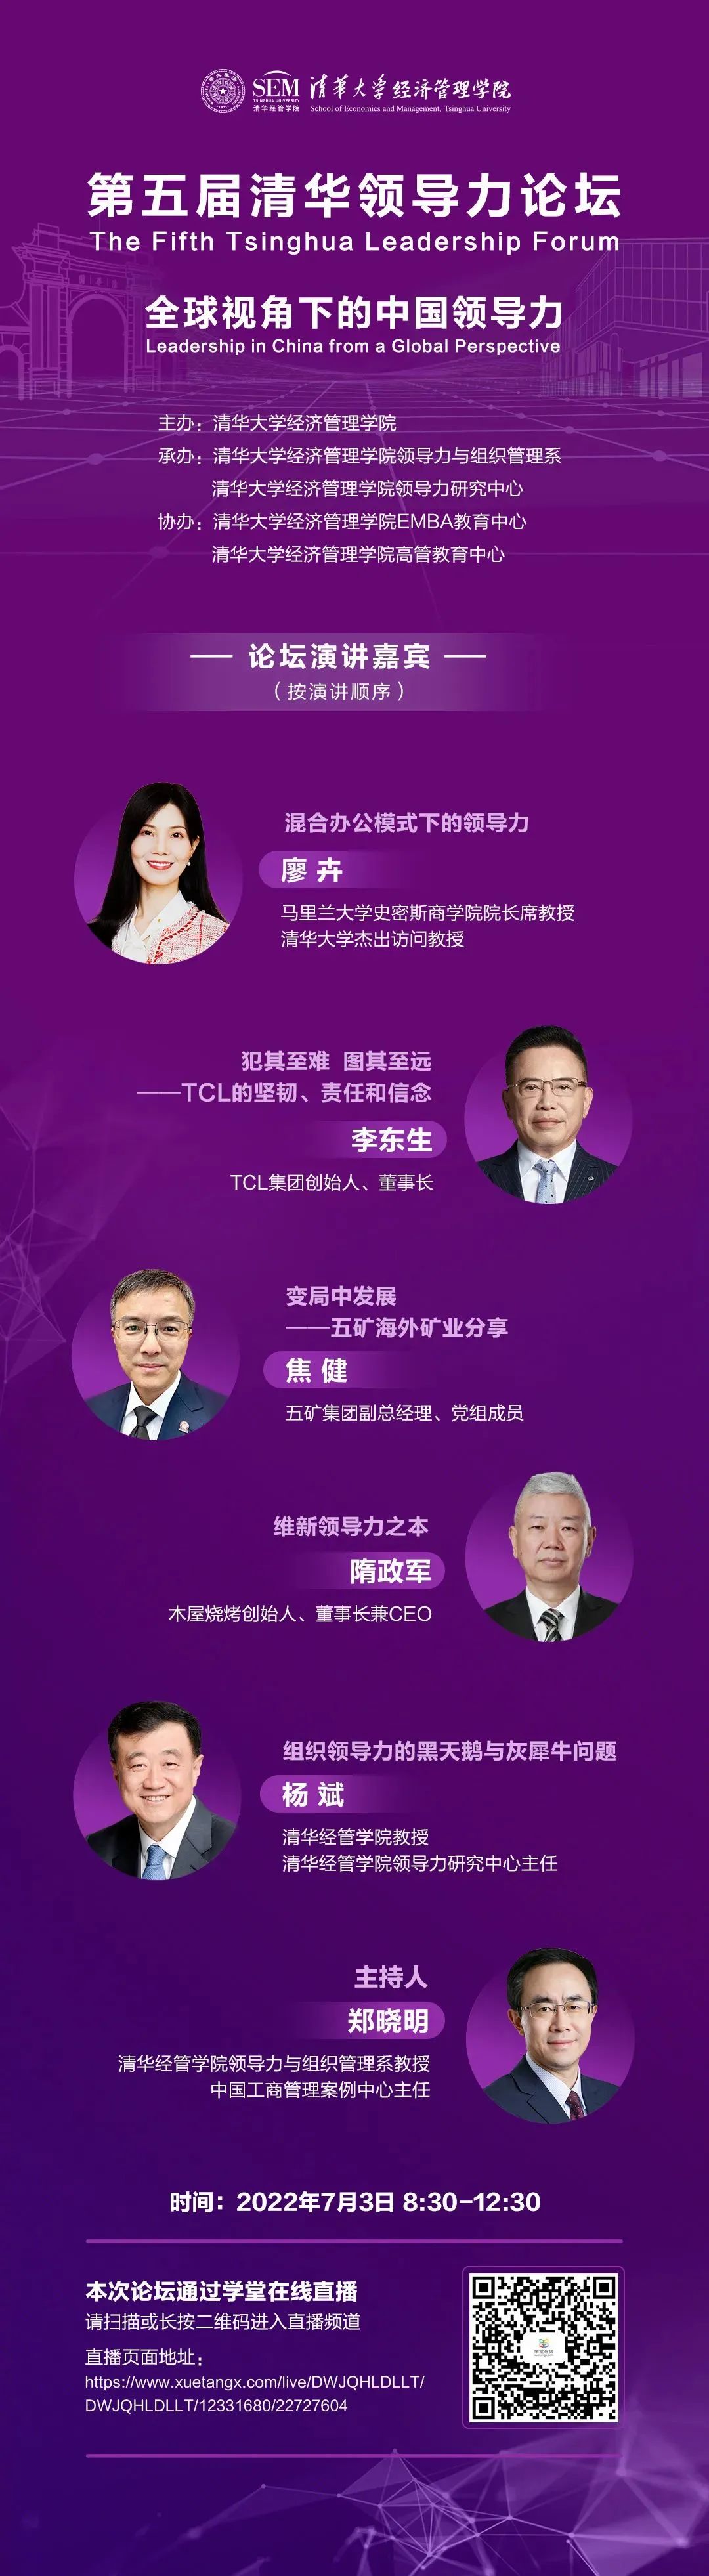 直播预告丨第五届清华领导力论坛实践论坛·全球视角下的中国领导力|清华大学